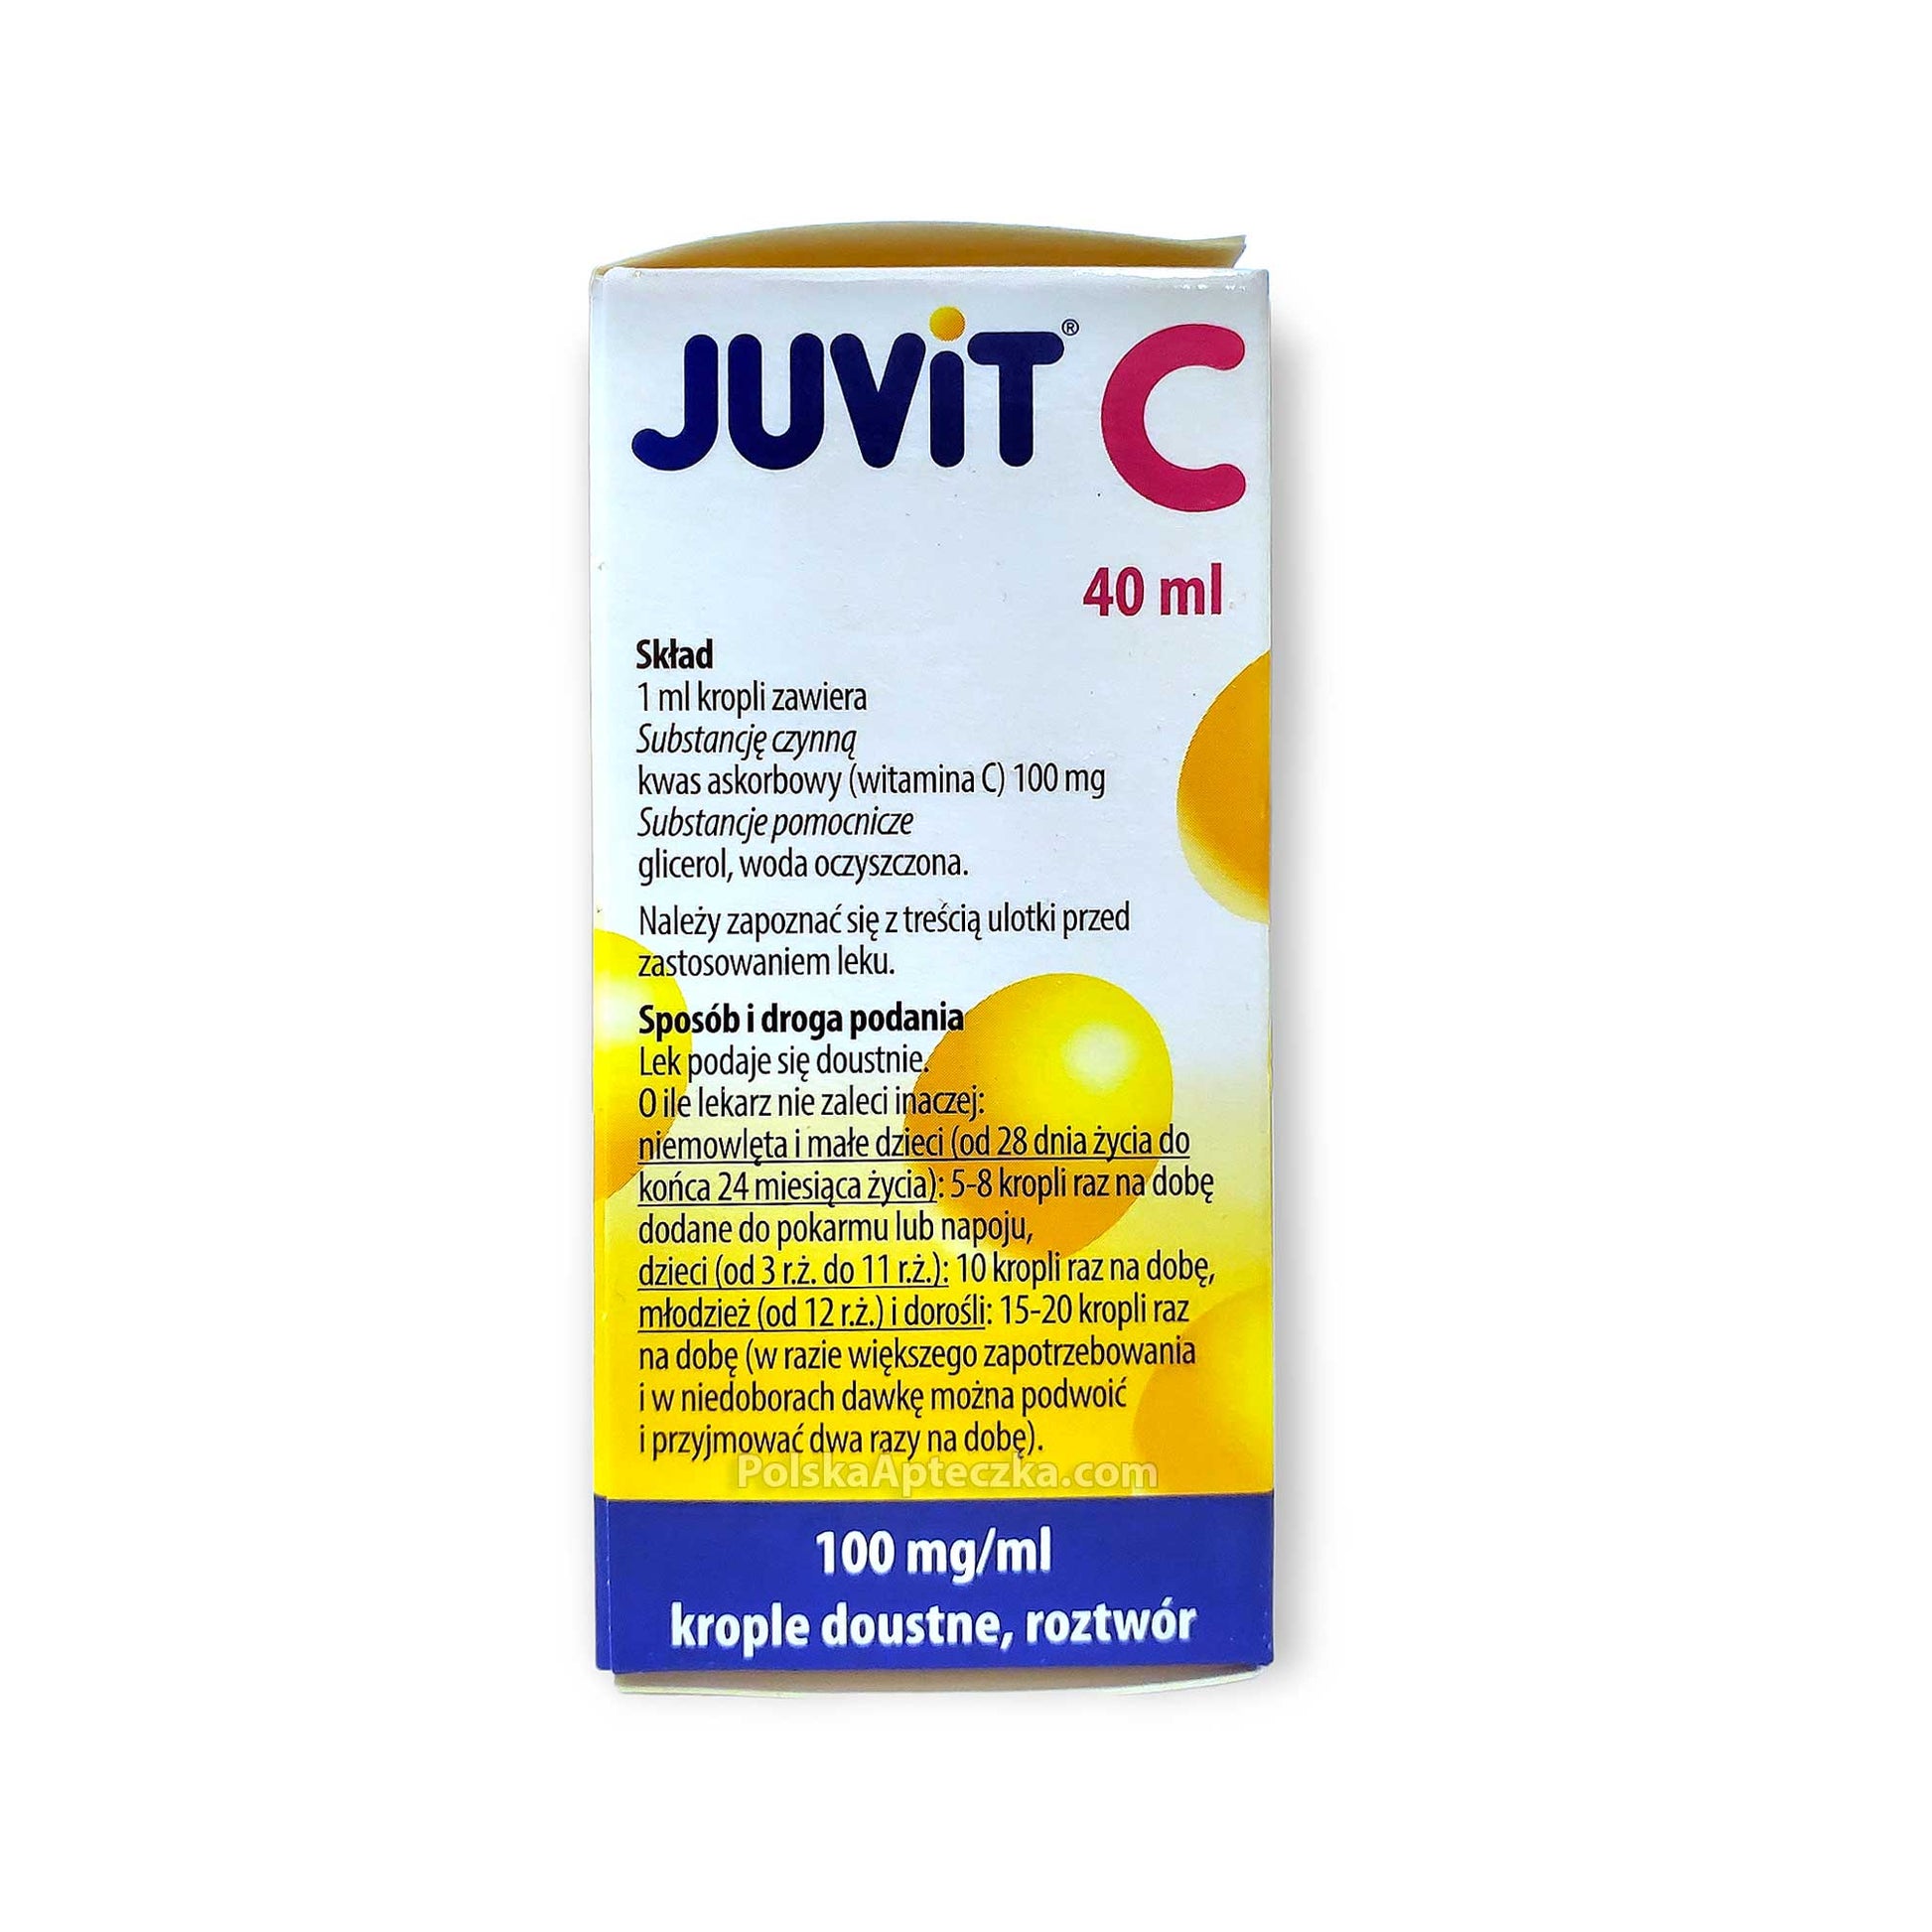 Juvit C 100mg/ml Krople doustne  40ml